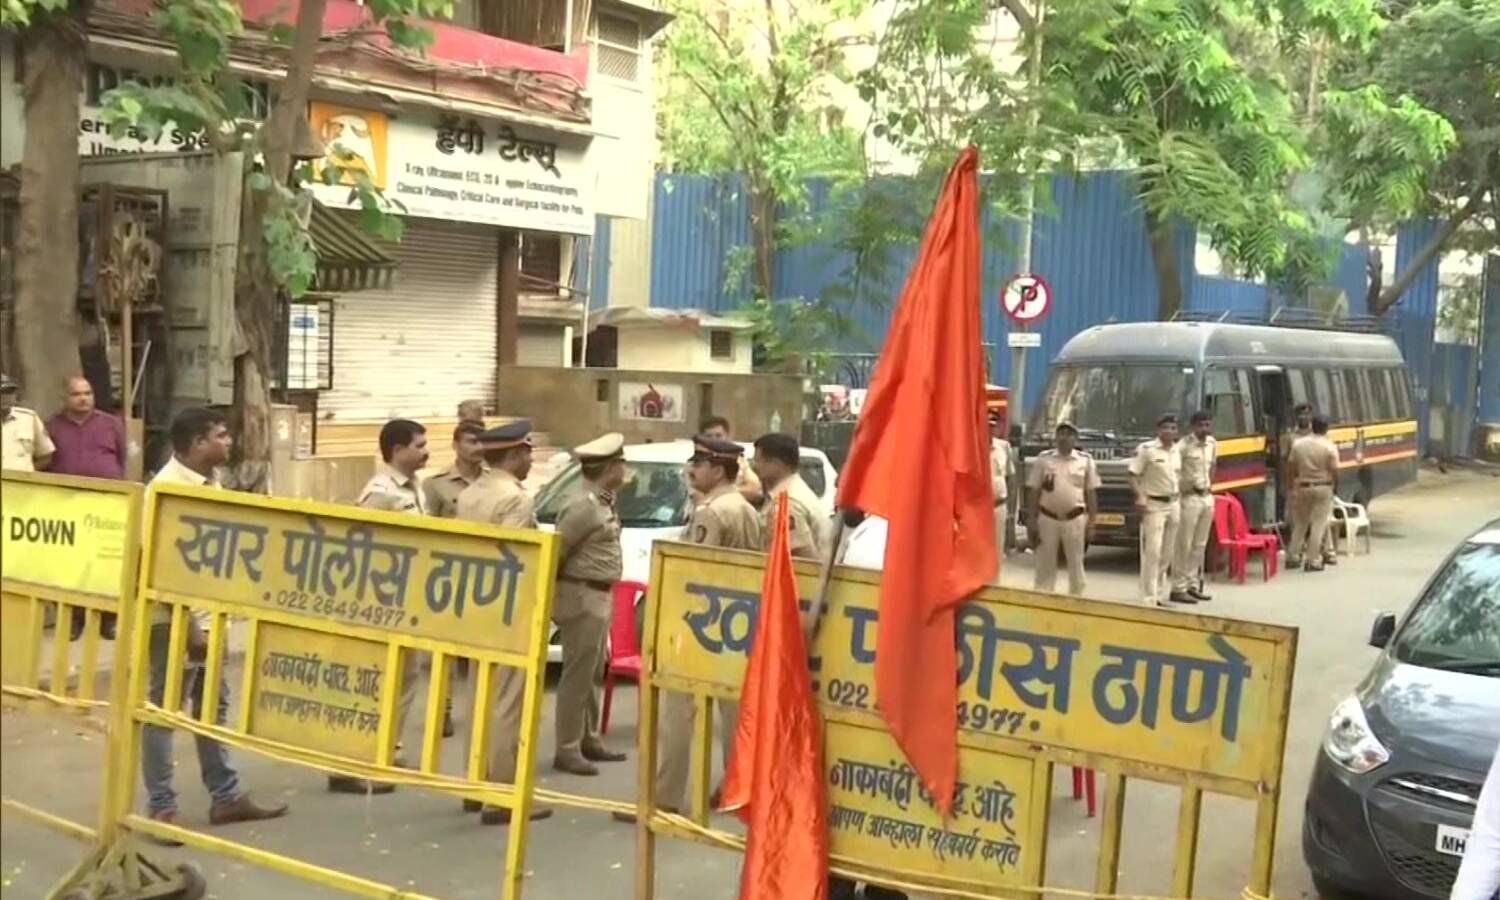 Mumbai Hanuman Chalisa Row : मुंबई में हनुमान चालीसा पर बवाल, सांसद नवनीत राणा के घर को शिवसैनिकों ने घेरा, बोले- स्वागत के लिए आए हैं, दम है तो नीचे आएं; बैरिकेड्स तोड़े